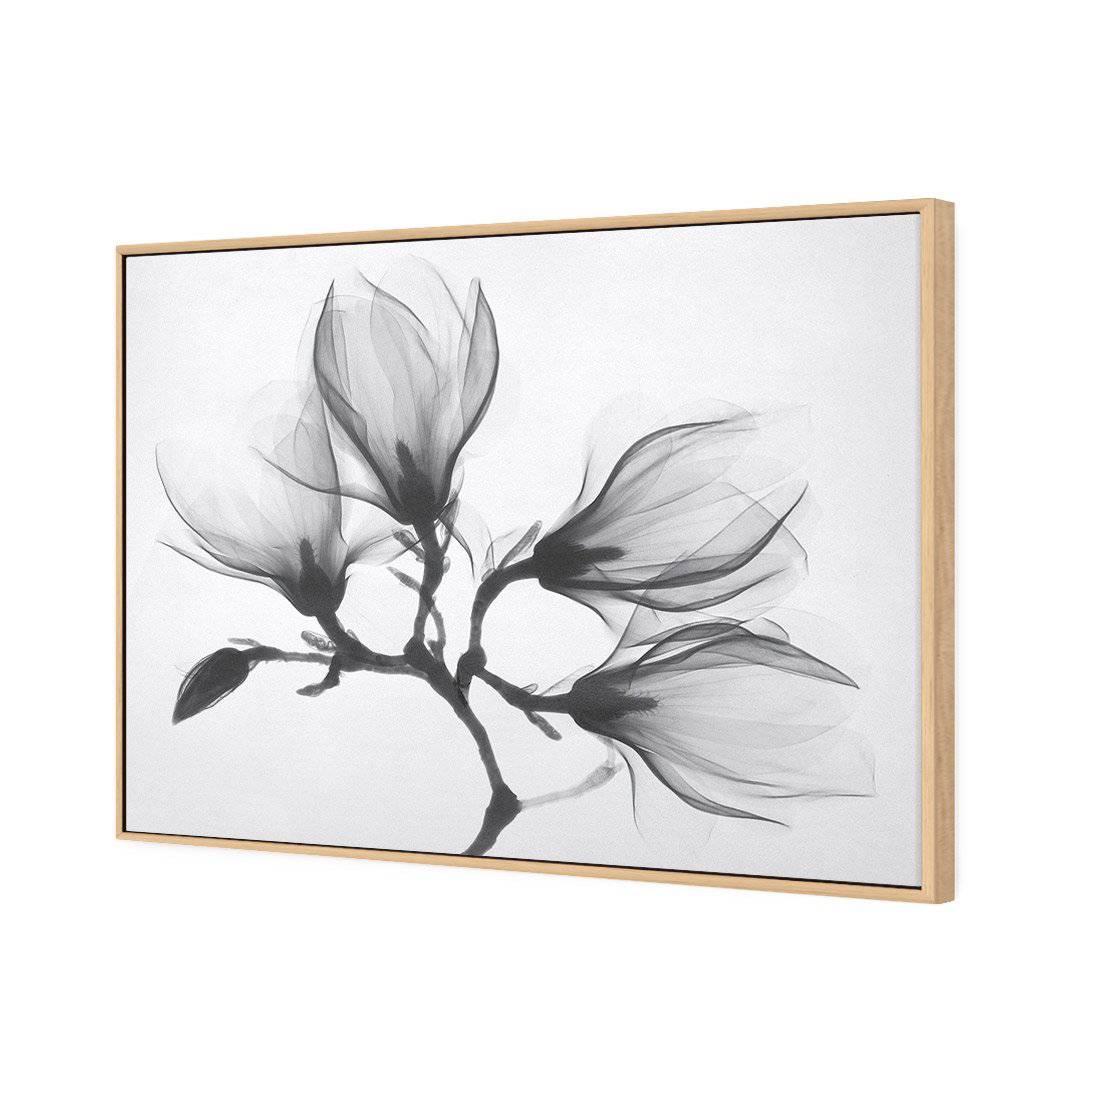 Magnolia Blossoms Canvas Art-Canvas-Wall Art Designs-45x30cm-Canvas - Oak Frame-Wall Art Designs